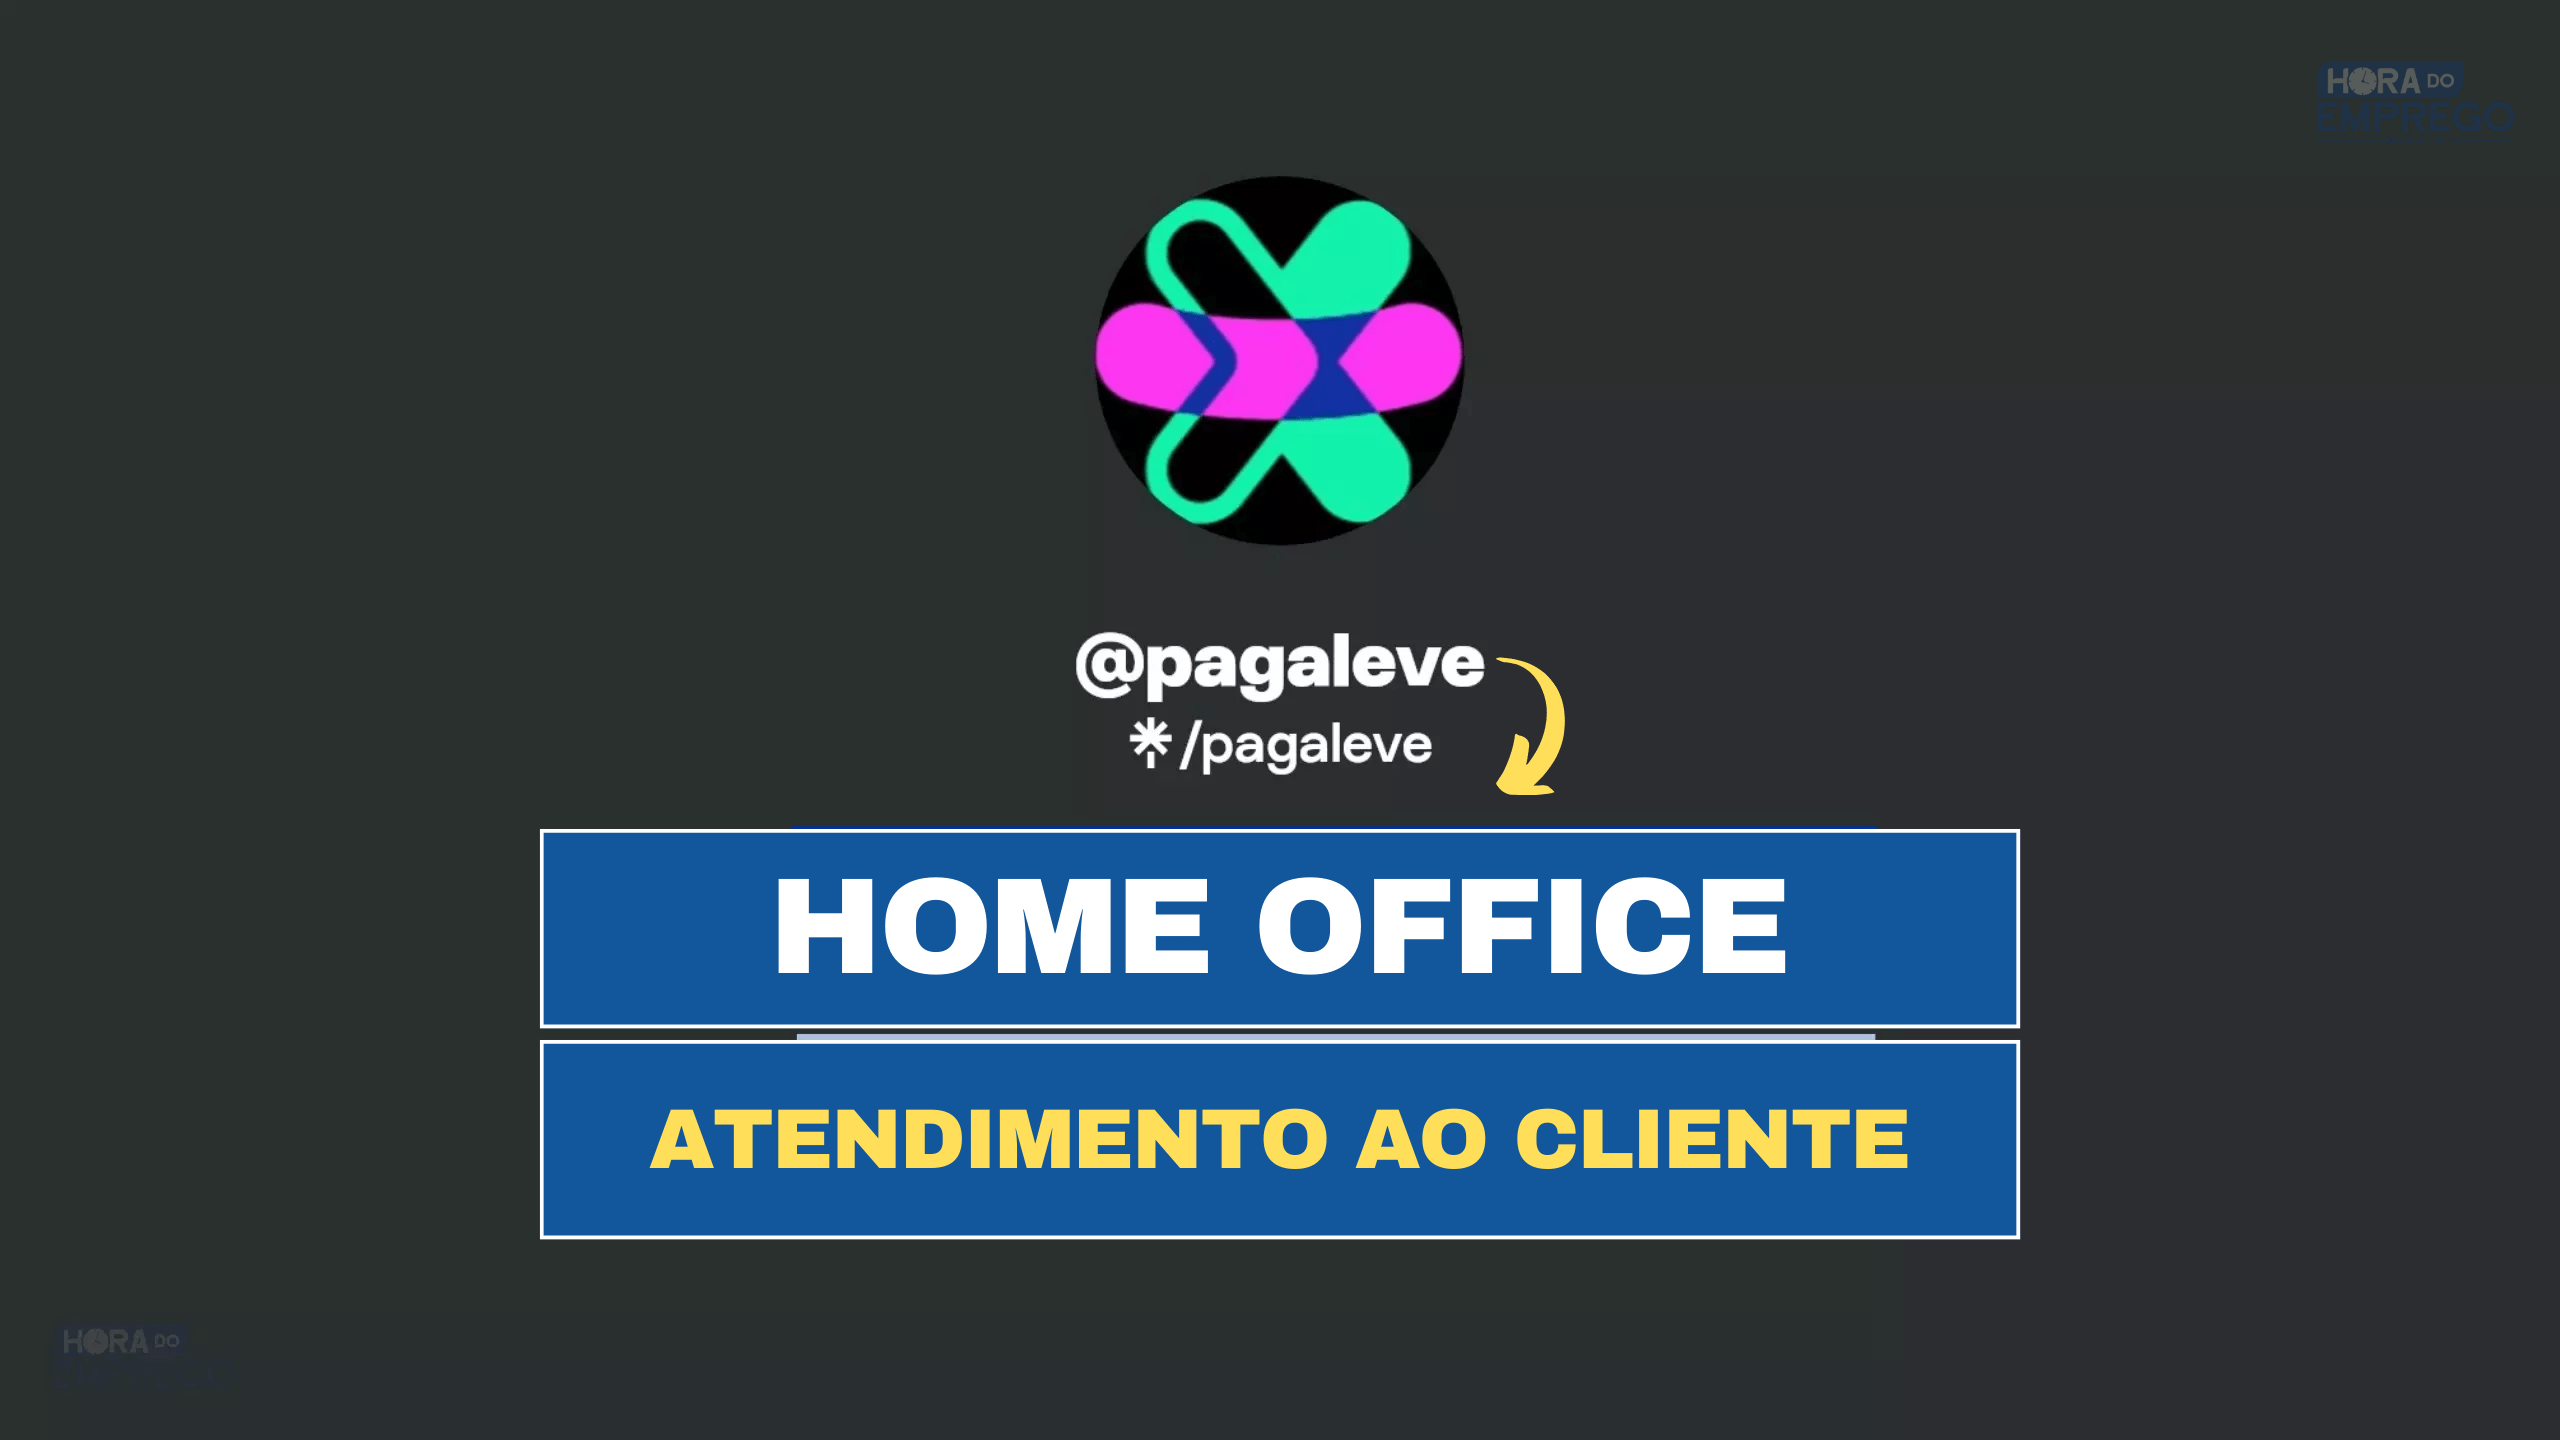 Pagaleve abre vagas HOME OFFICE para TRABALHAR DE CASA com Atendimento ao Cliente